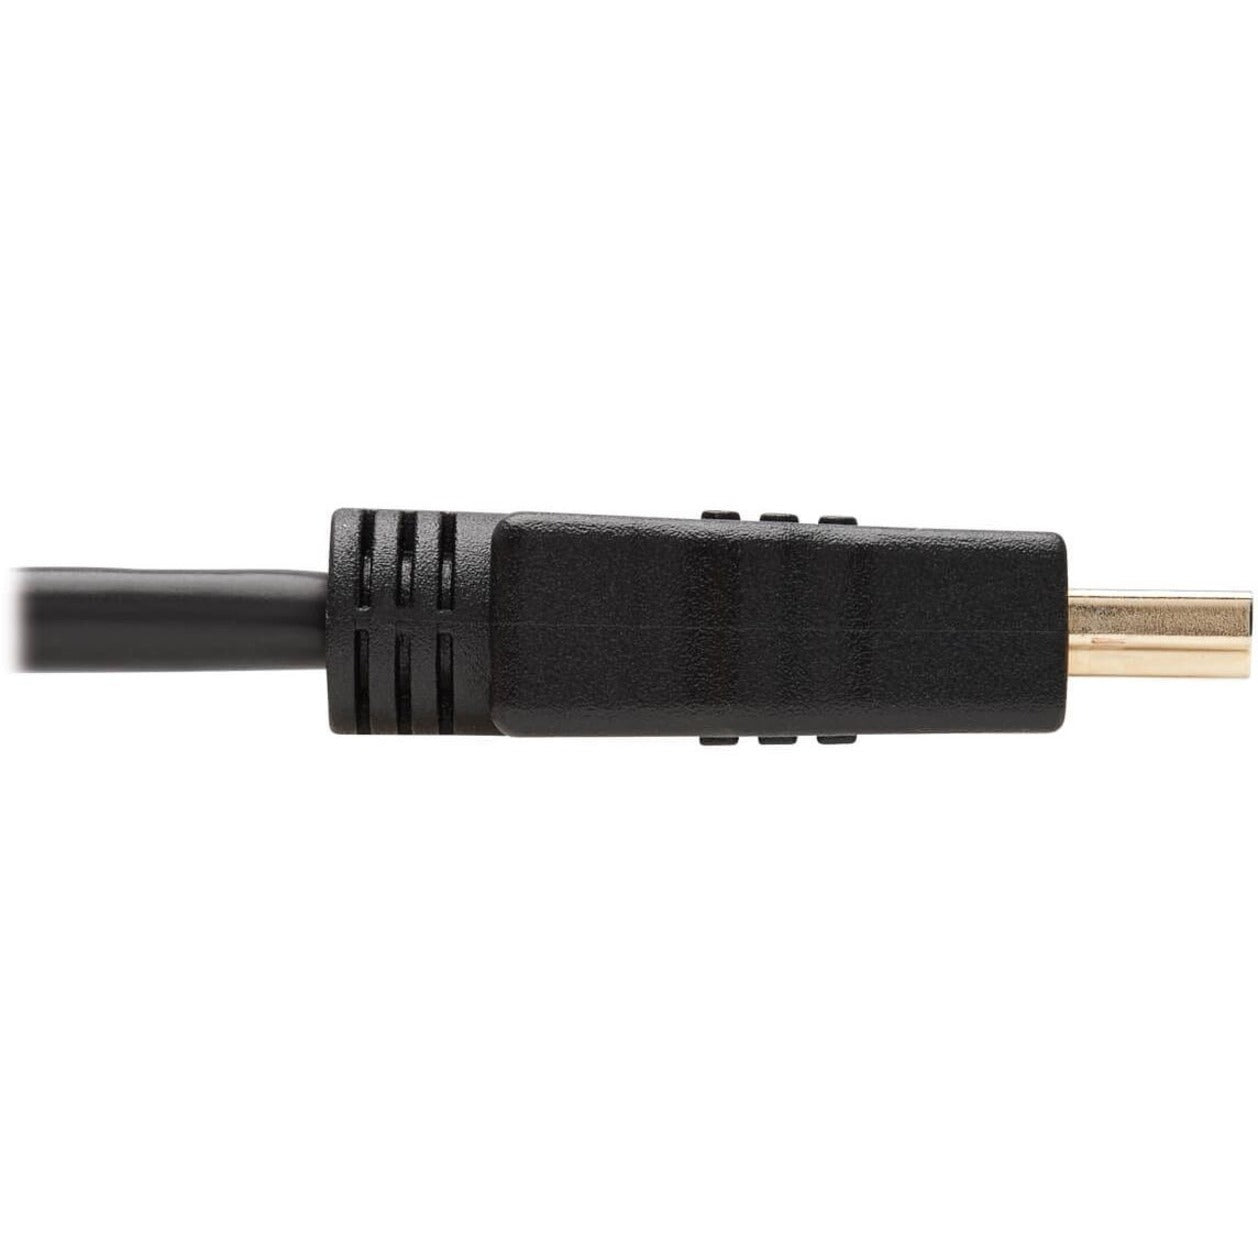 Tripp Lite P568-006 High Speed Audio/Video HDMI Kabel 6 ft Schwarz